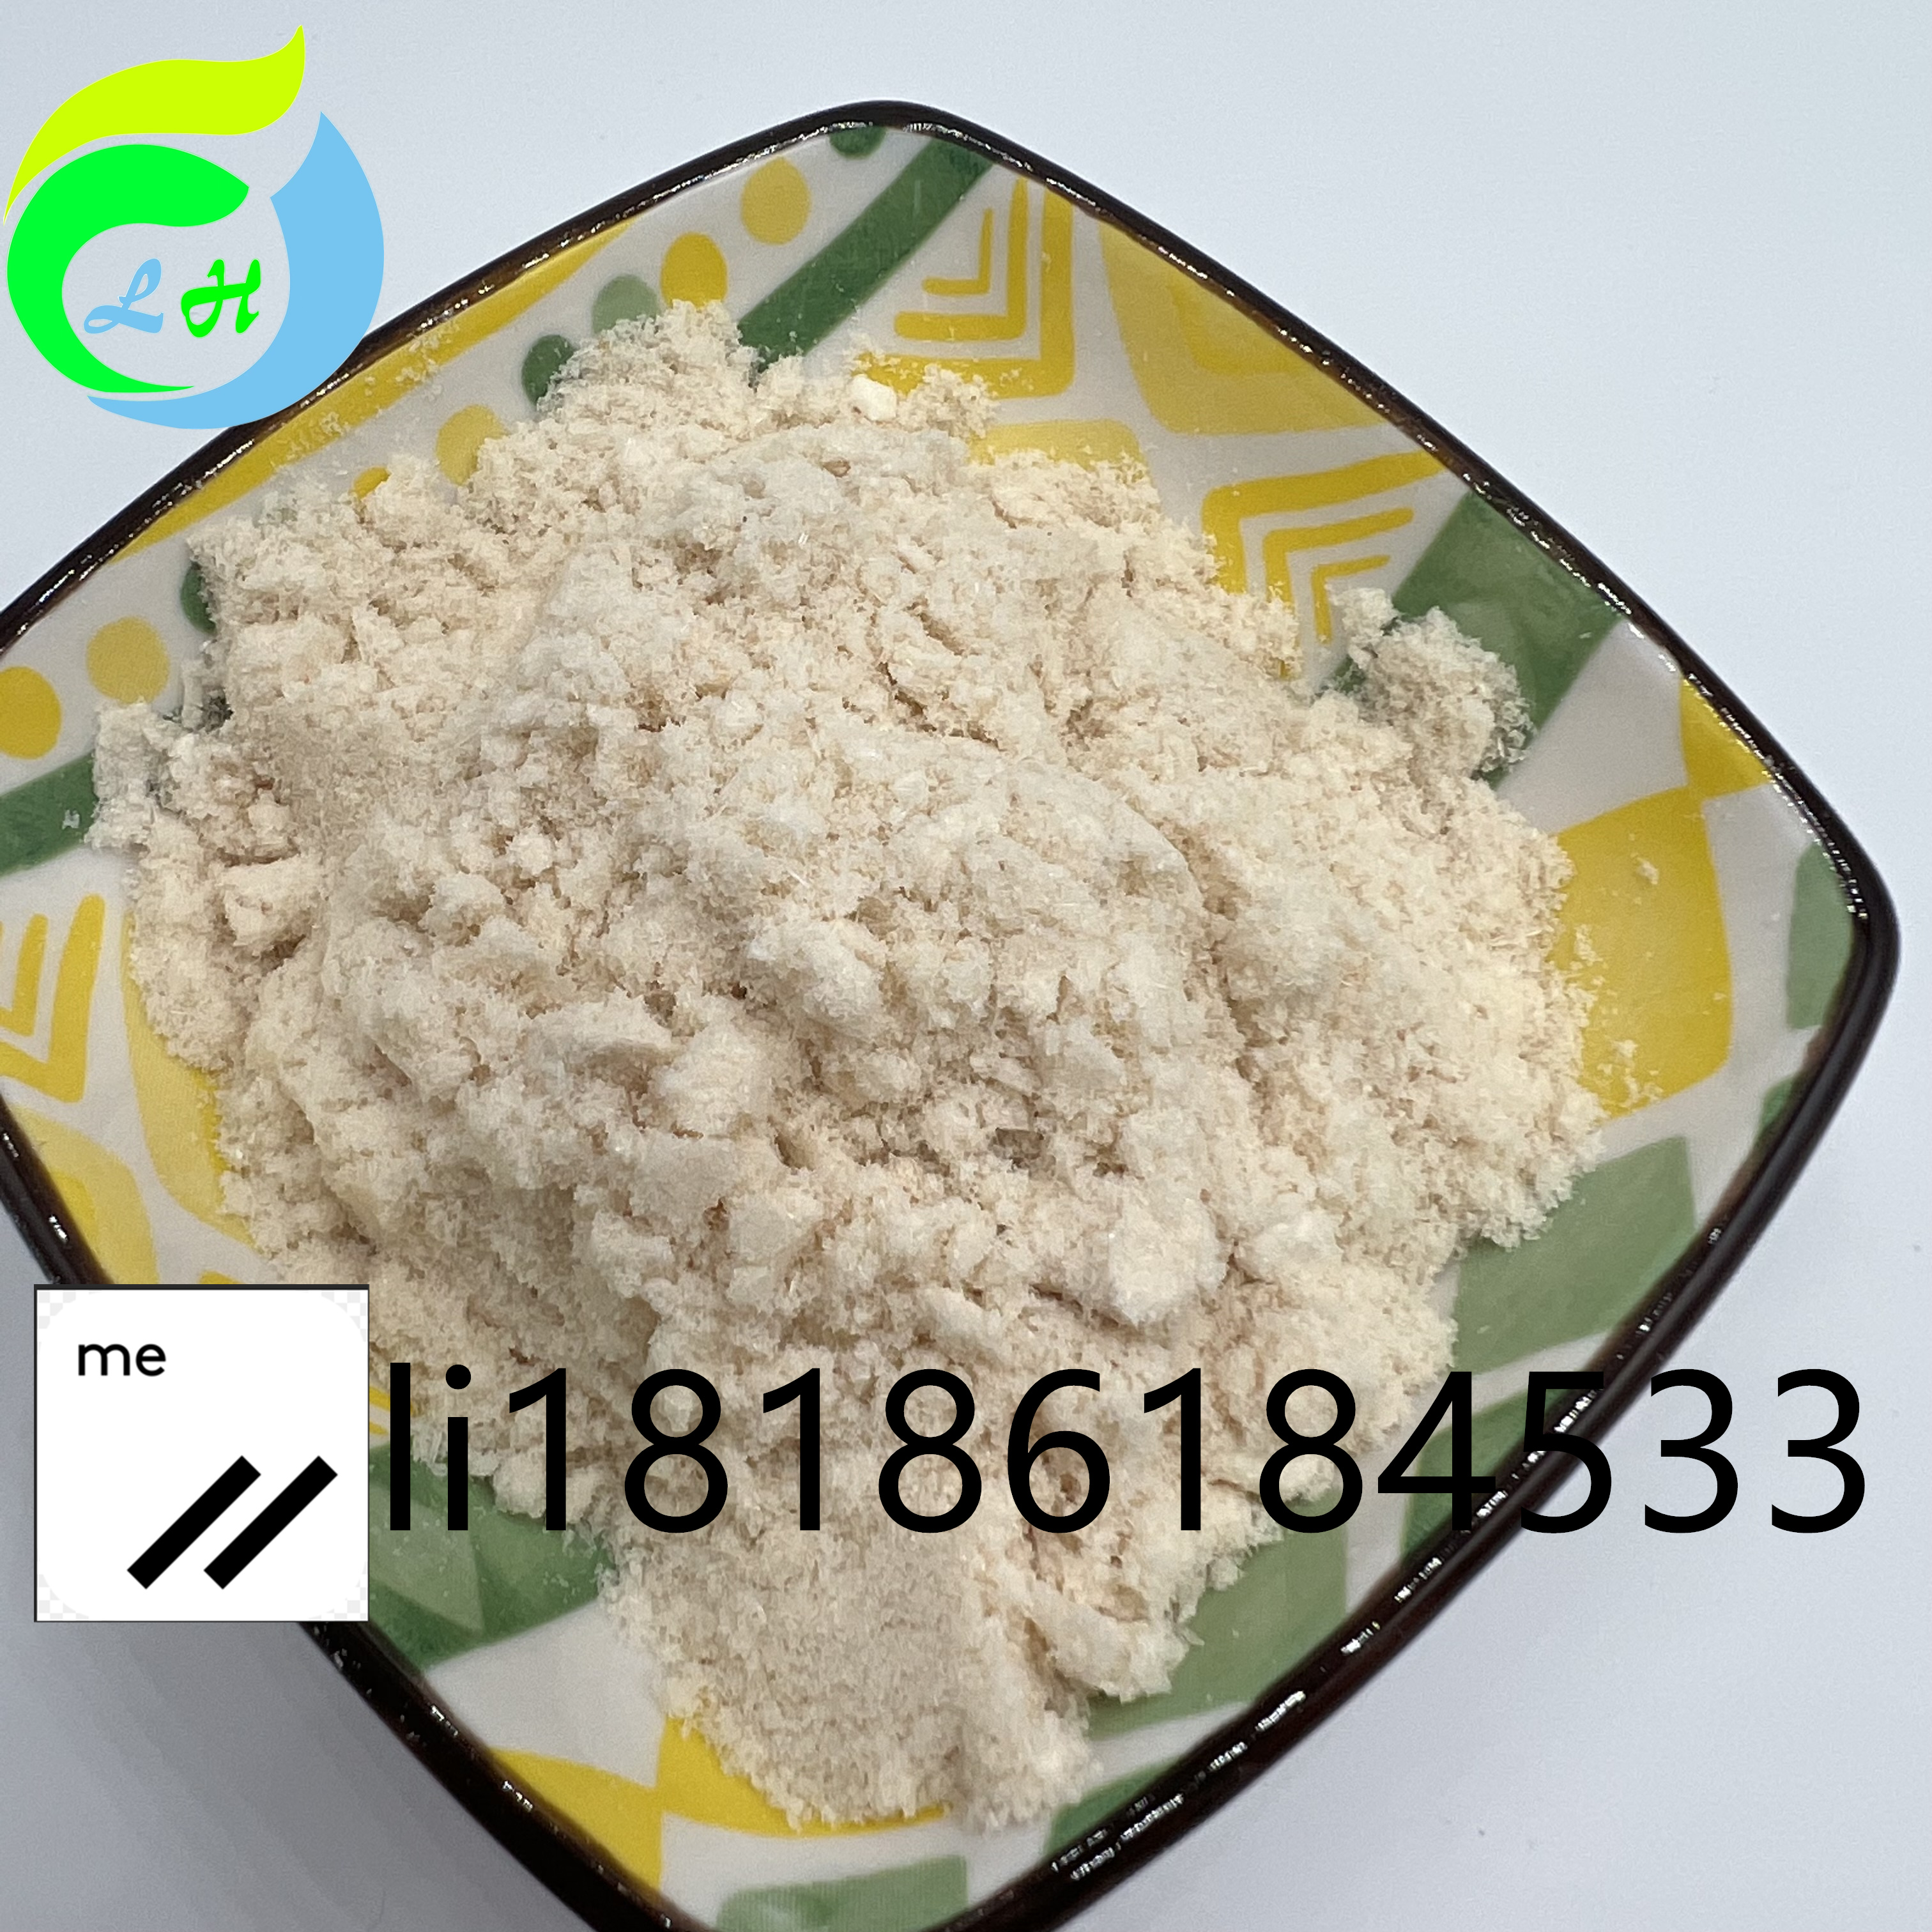 7361-61-7 Xylazine Powder Pharma Raw Material Bulk Drug Intermediates